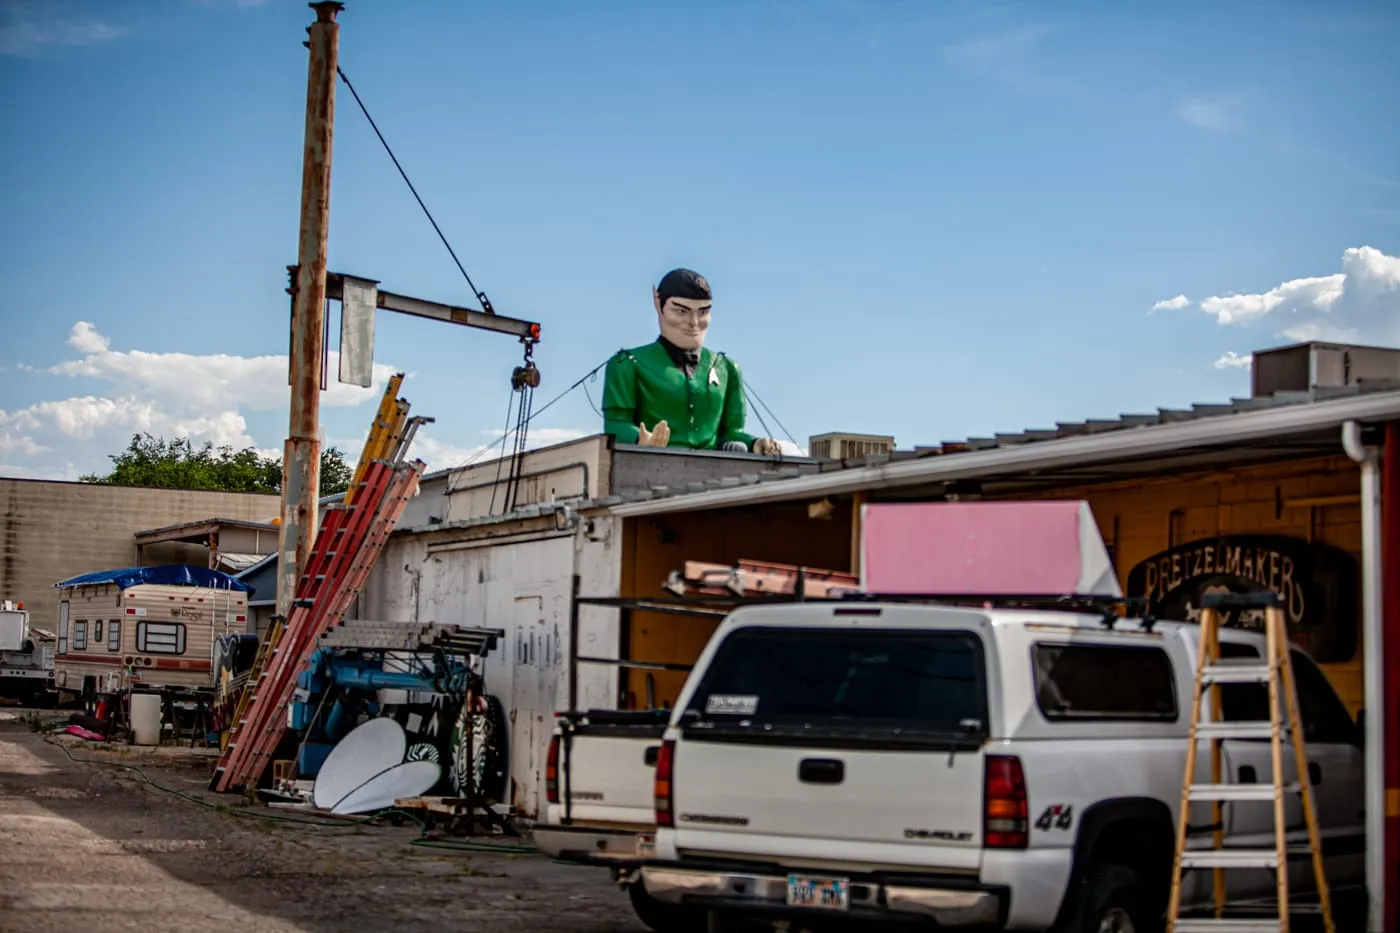 Star Trek Spock Muffler Man in Salt Lake City, Utah at Rainbow Neon Sign Company | Utah Roadside Attractions